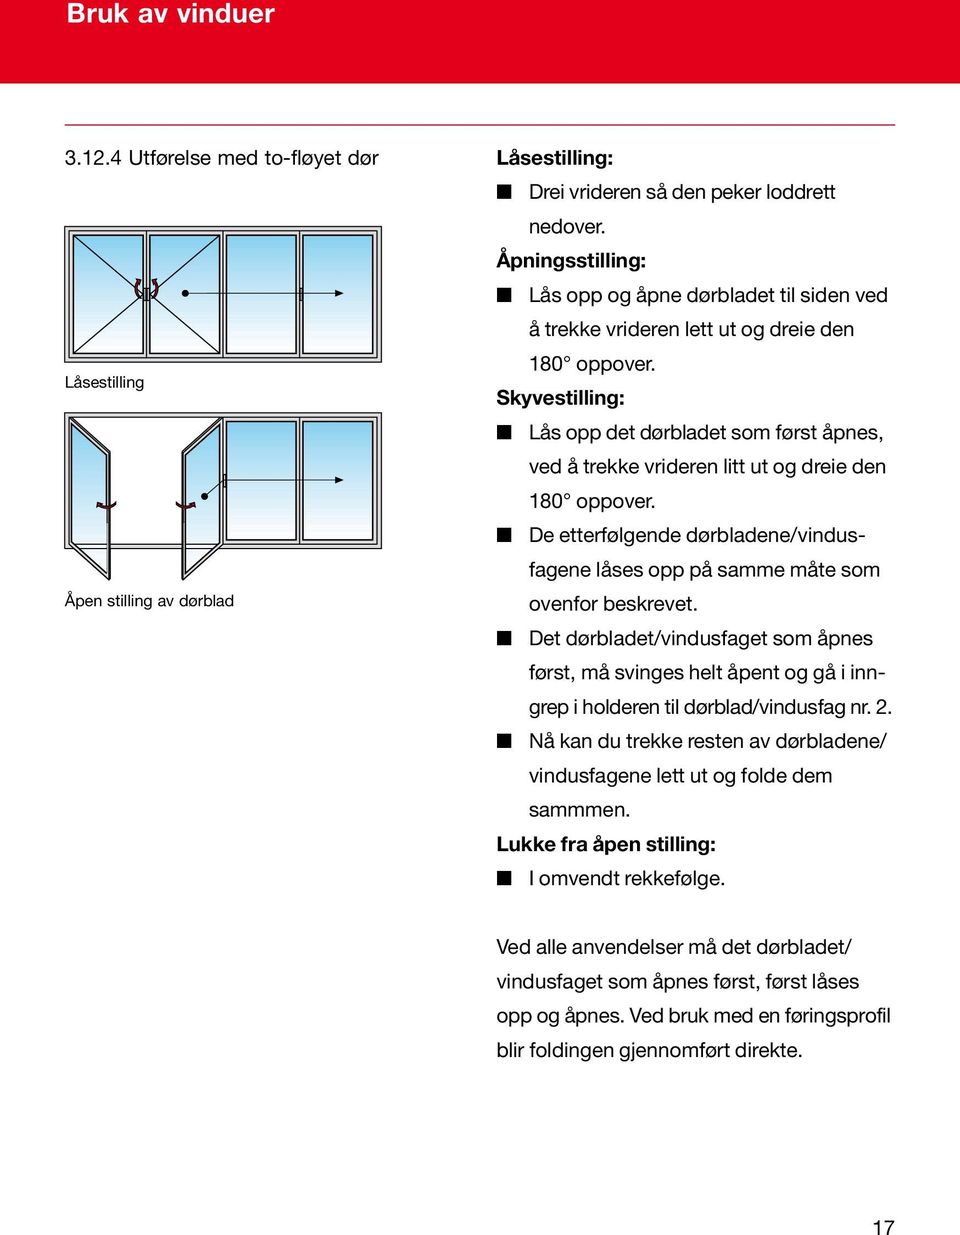 Skyvestilling: Lås opp det dørbladet som først åpnes, ved å trekke vrideren litt ut og dreie den 180 oppover. De etterfølgende dørbladene/vindusfagene låses opp på samme måte som ovenfor beskrevet.